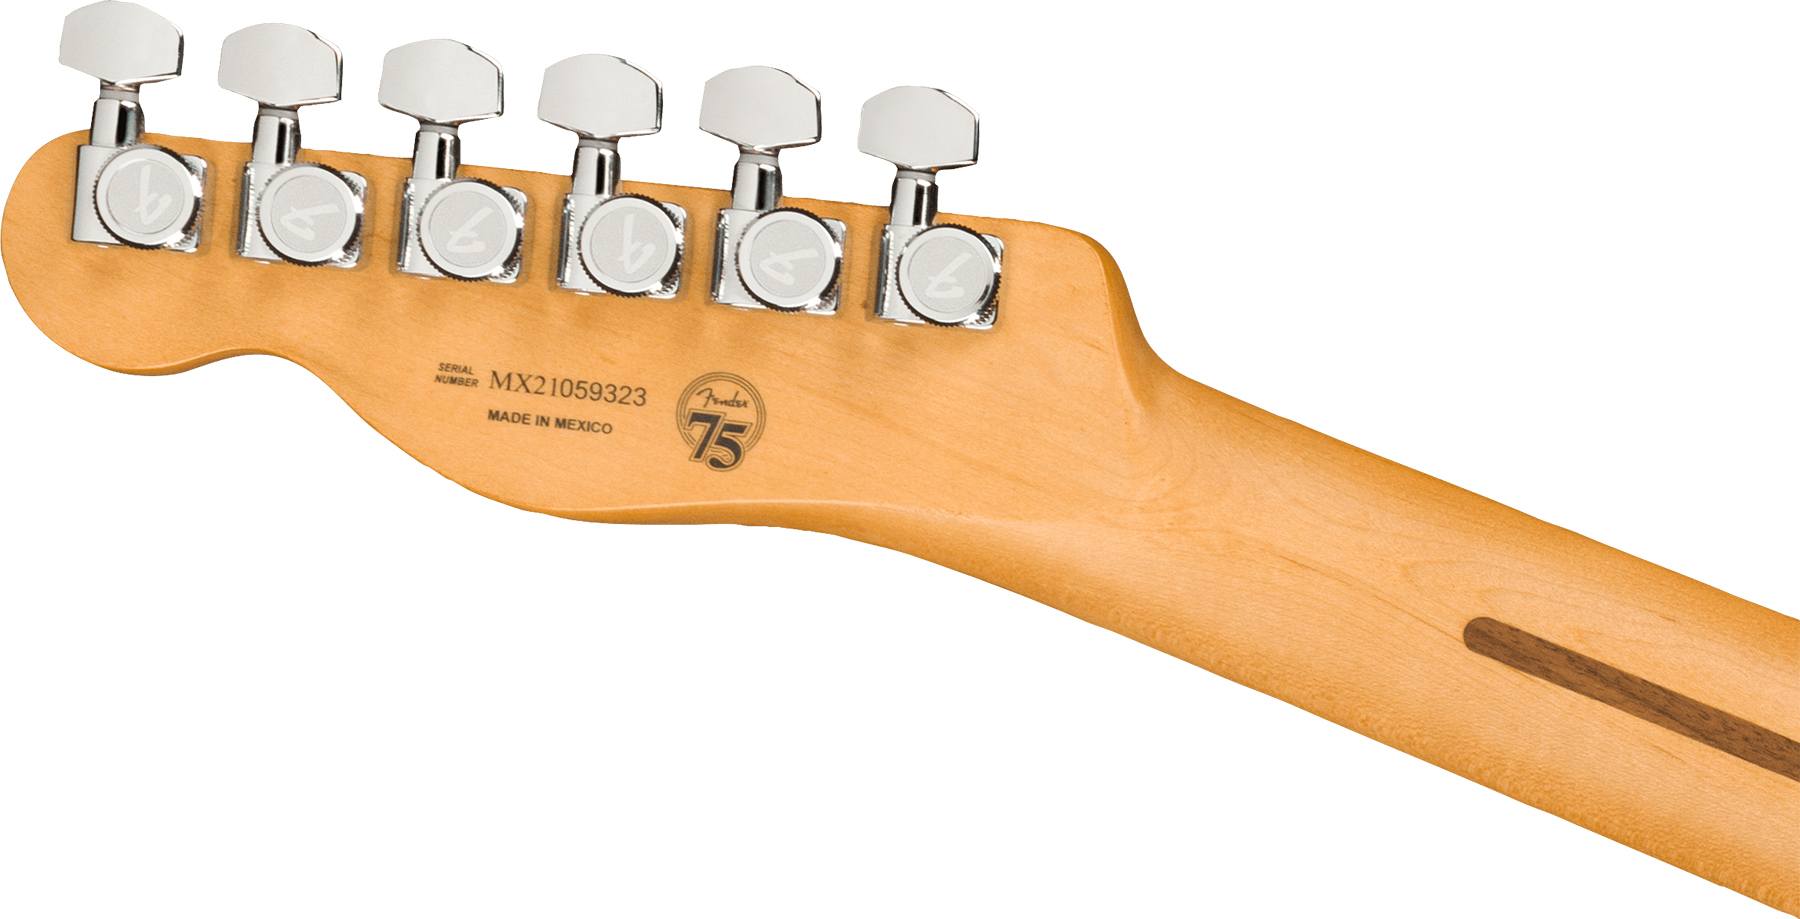 Fender Tele Player Plus Mex 2s Ht Mn - 3-color Sunburst - Tel shape electric guitar - Variation 3